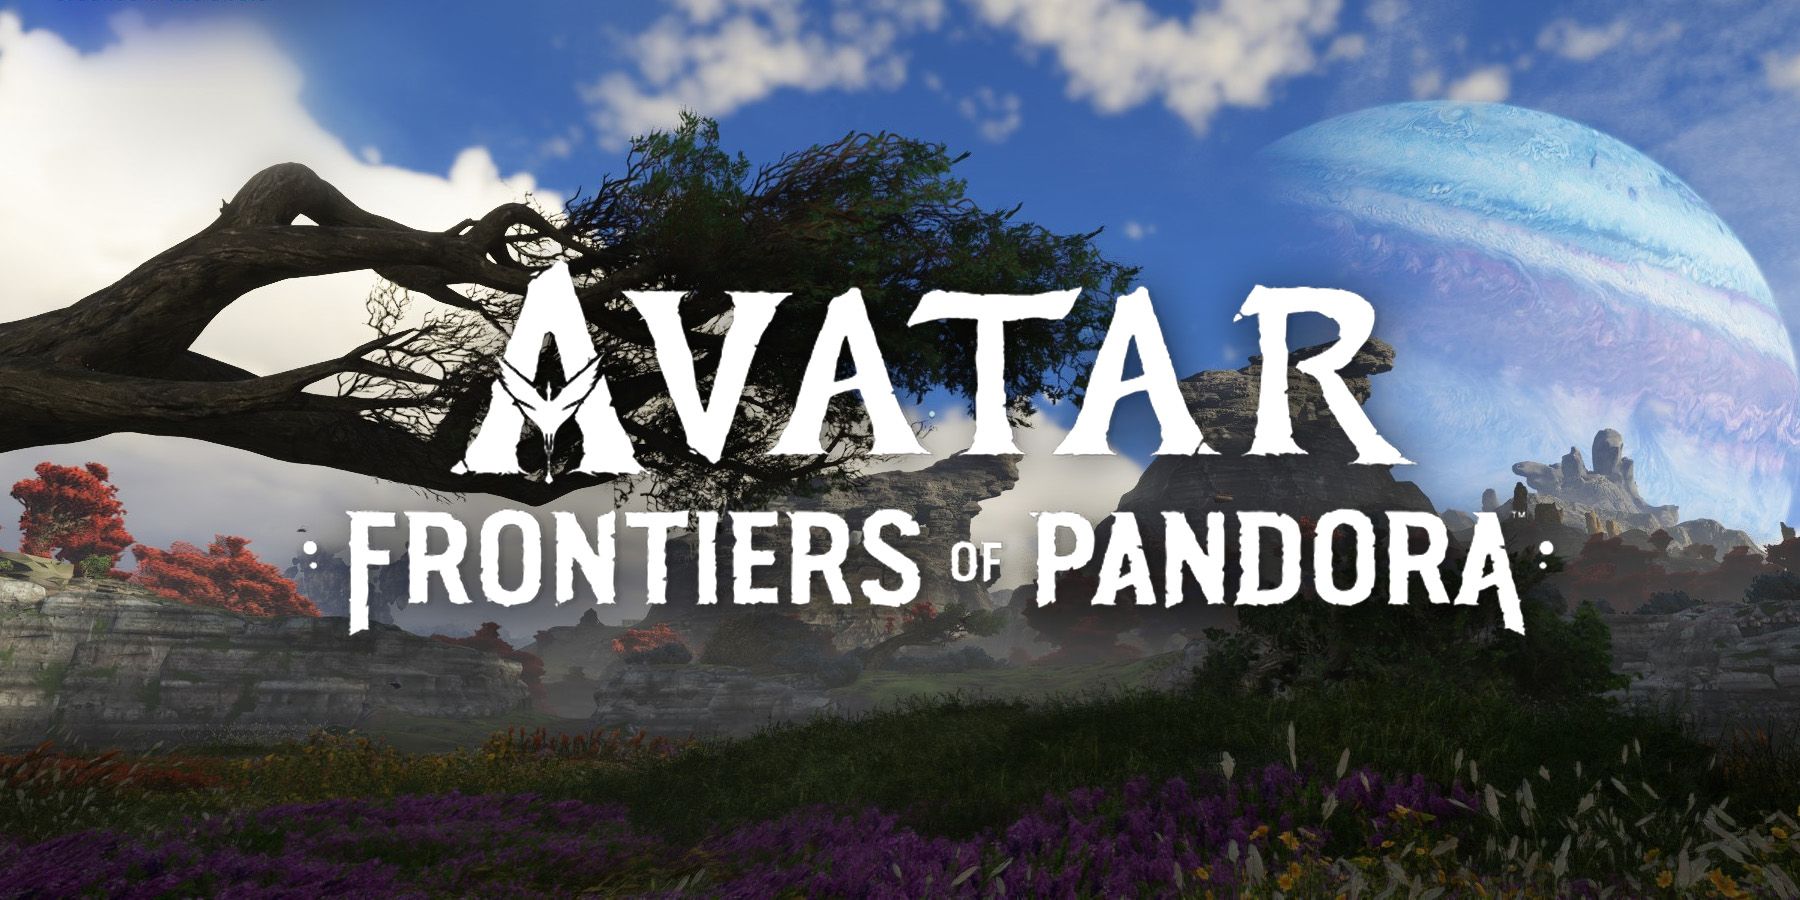 "Una experiencia sensorial asombrosa" - Revisión de Avatar: Fronteras de Pandora